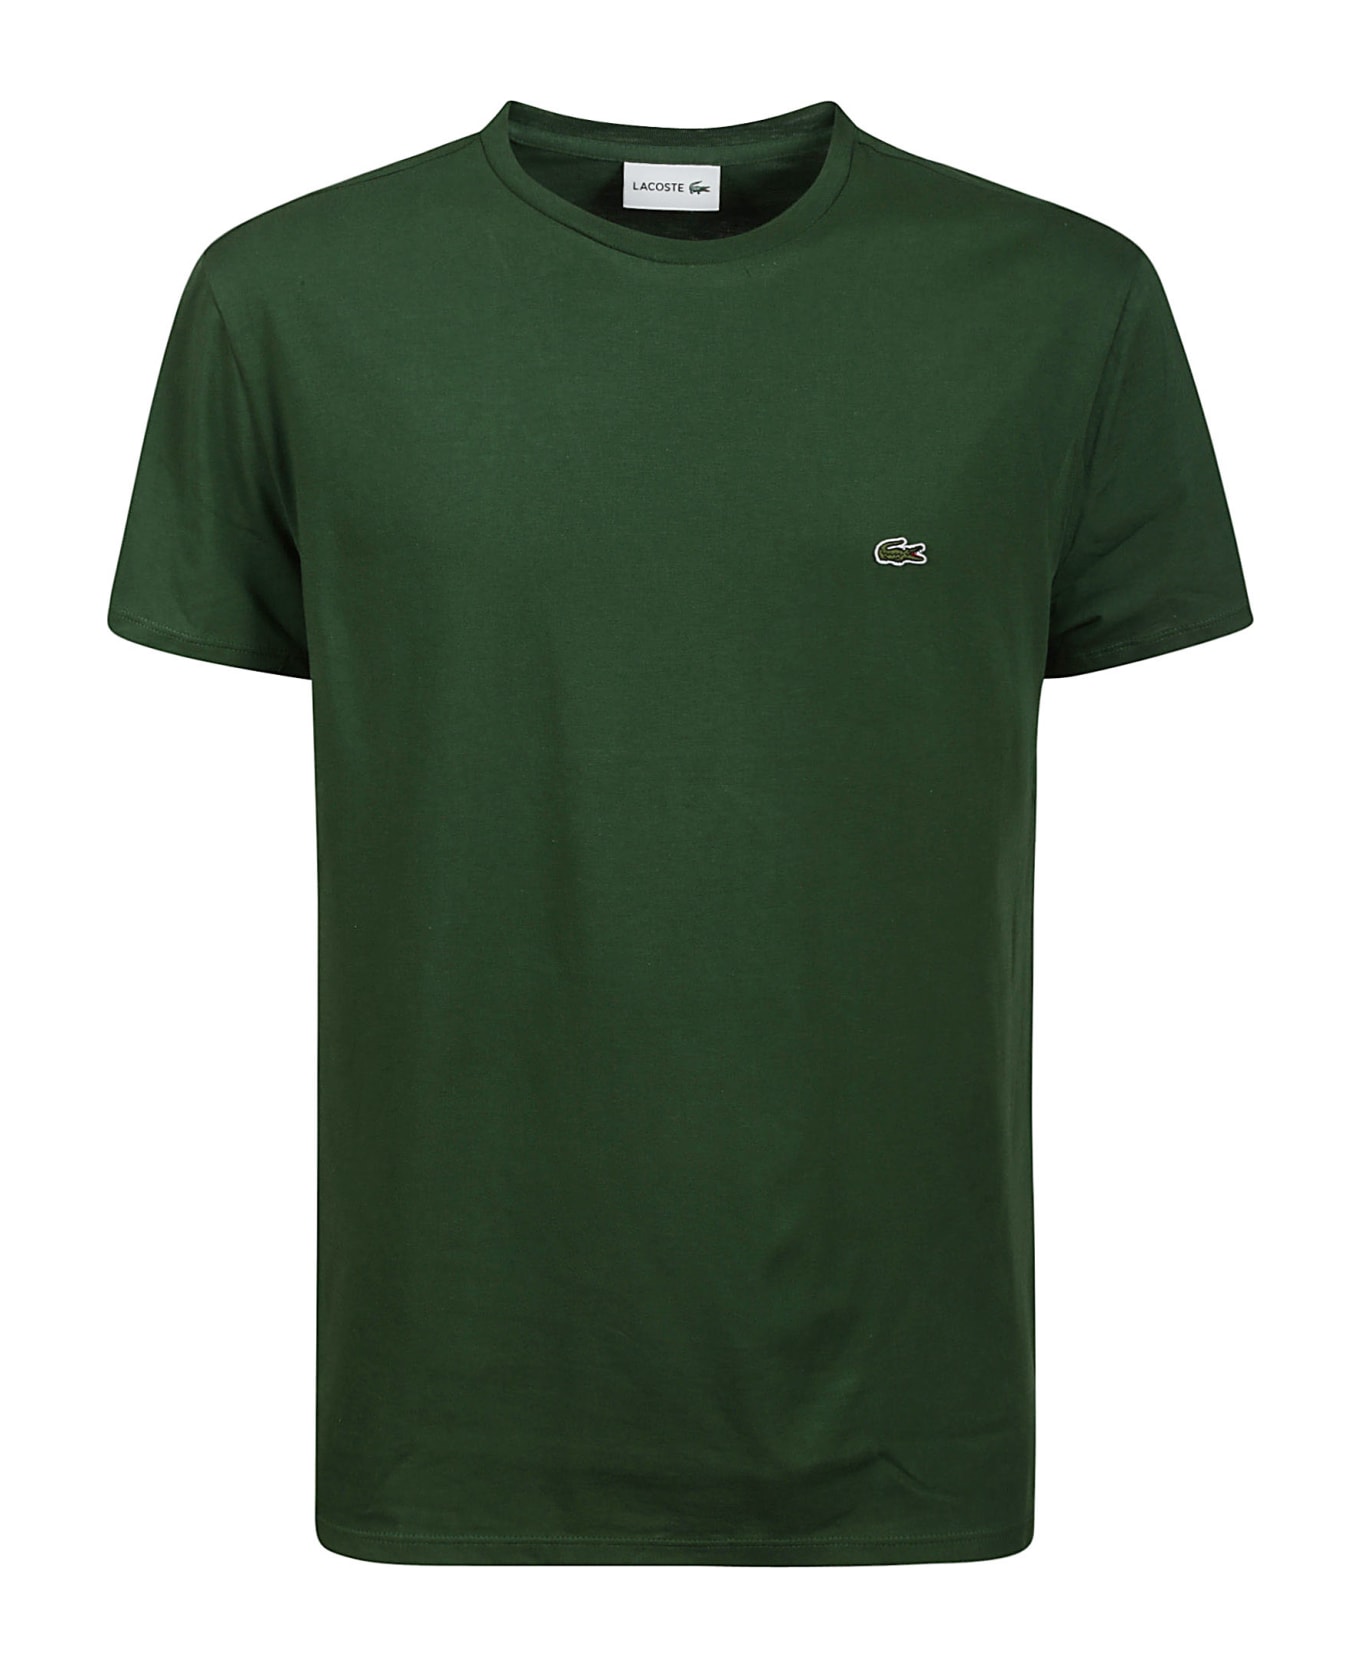 Lacoste Tshirt - Green シャツ